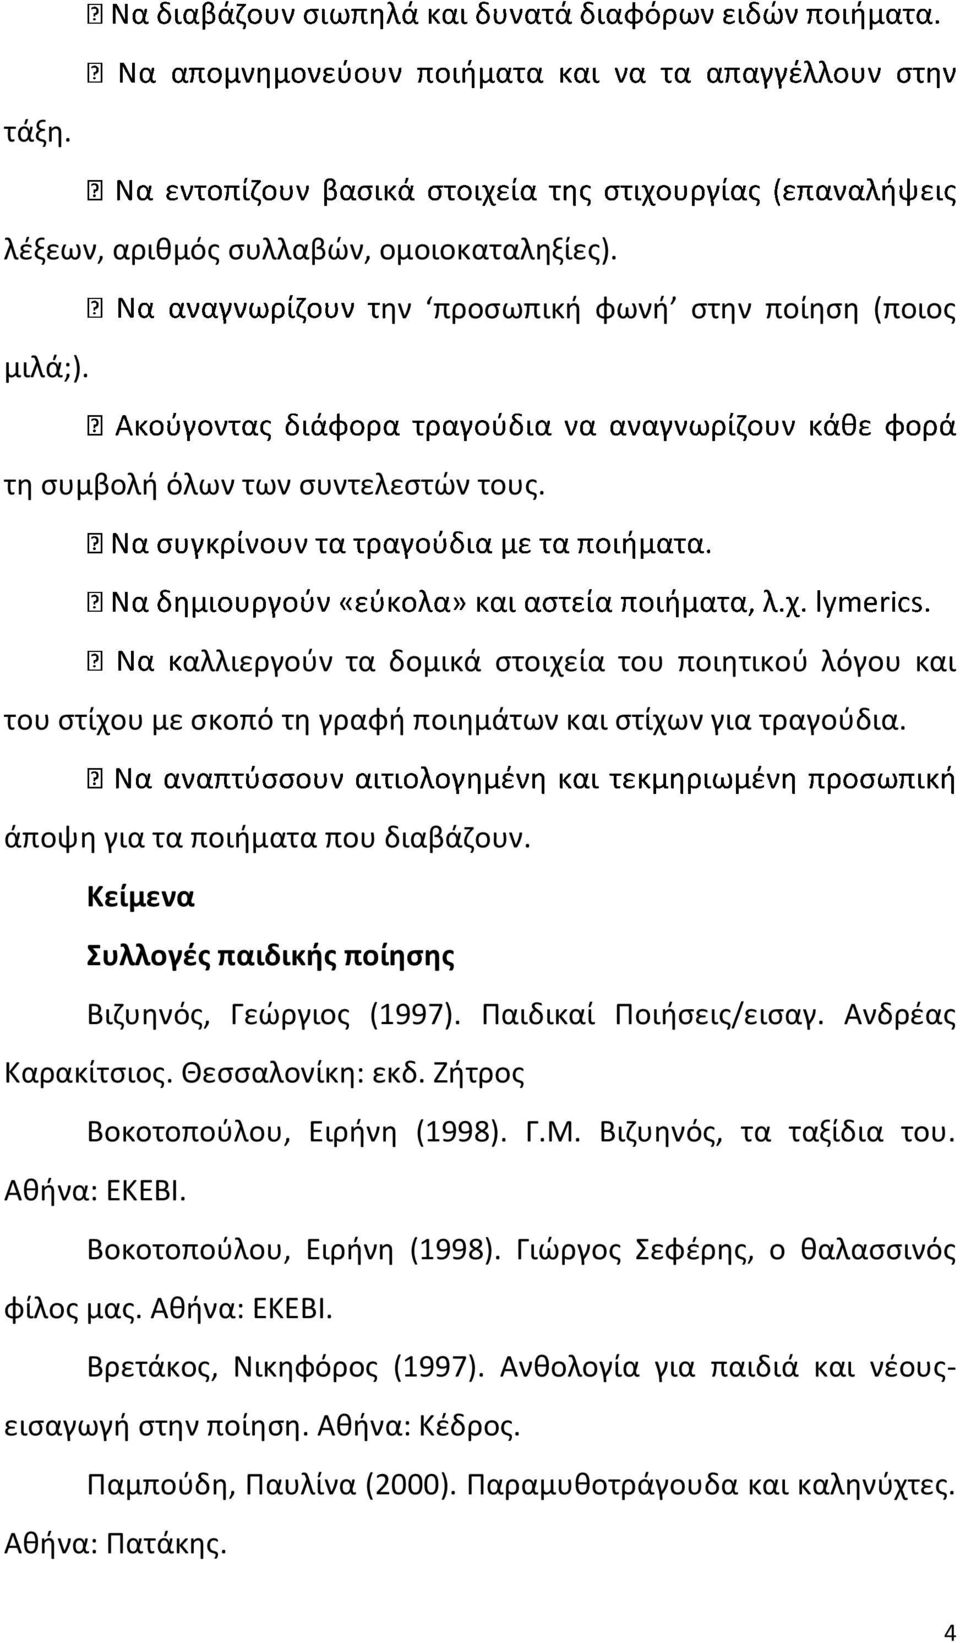 Κείμενα Συλλογές παιδικής ποίησης Βιζυηνός, Γεώργιος (1997). Παιδικαί Ποιήσεις/εισαγ. Ανδρέας Καρακίτσιος. Θεσσαλονίκη: εκδ. Ζήτρος Bοκοτοπούλου, Ειρήνη (1998). Γ.Μ.